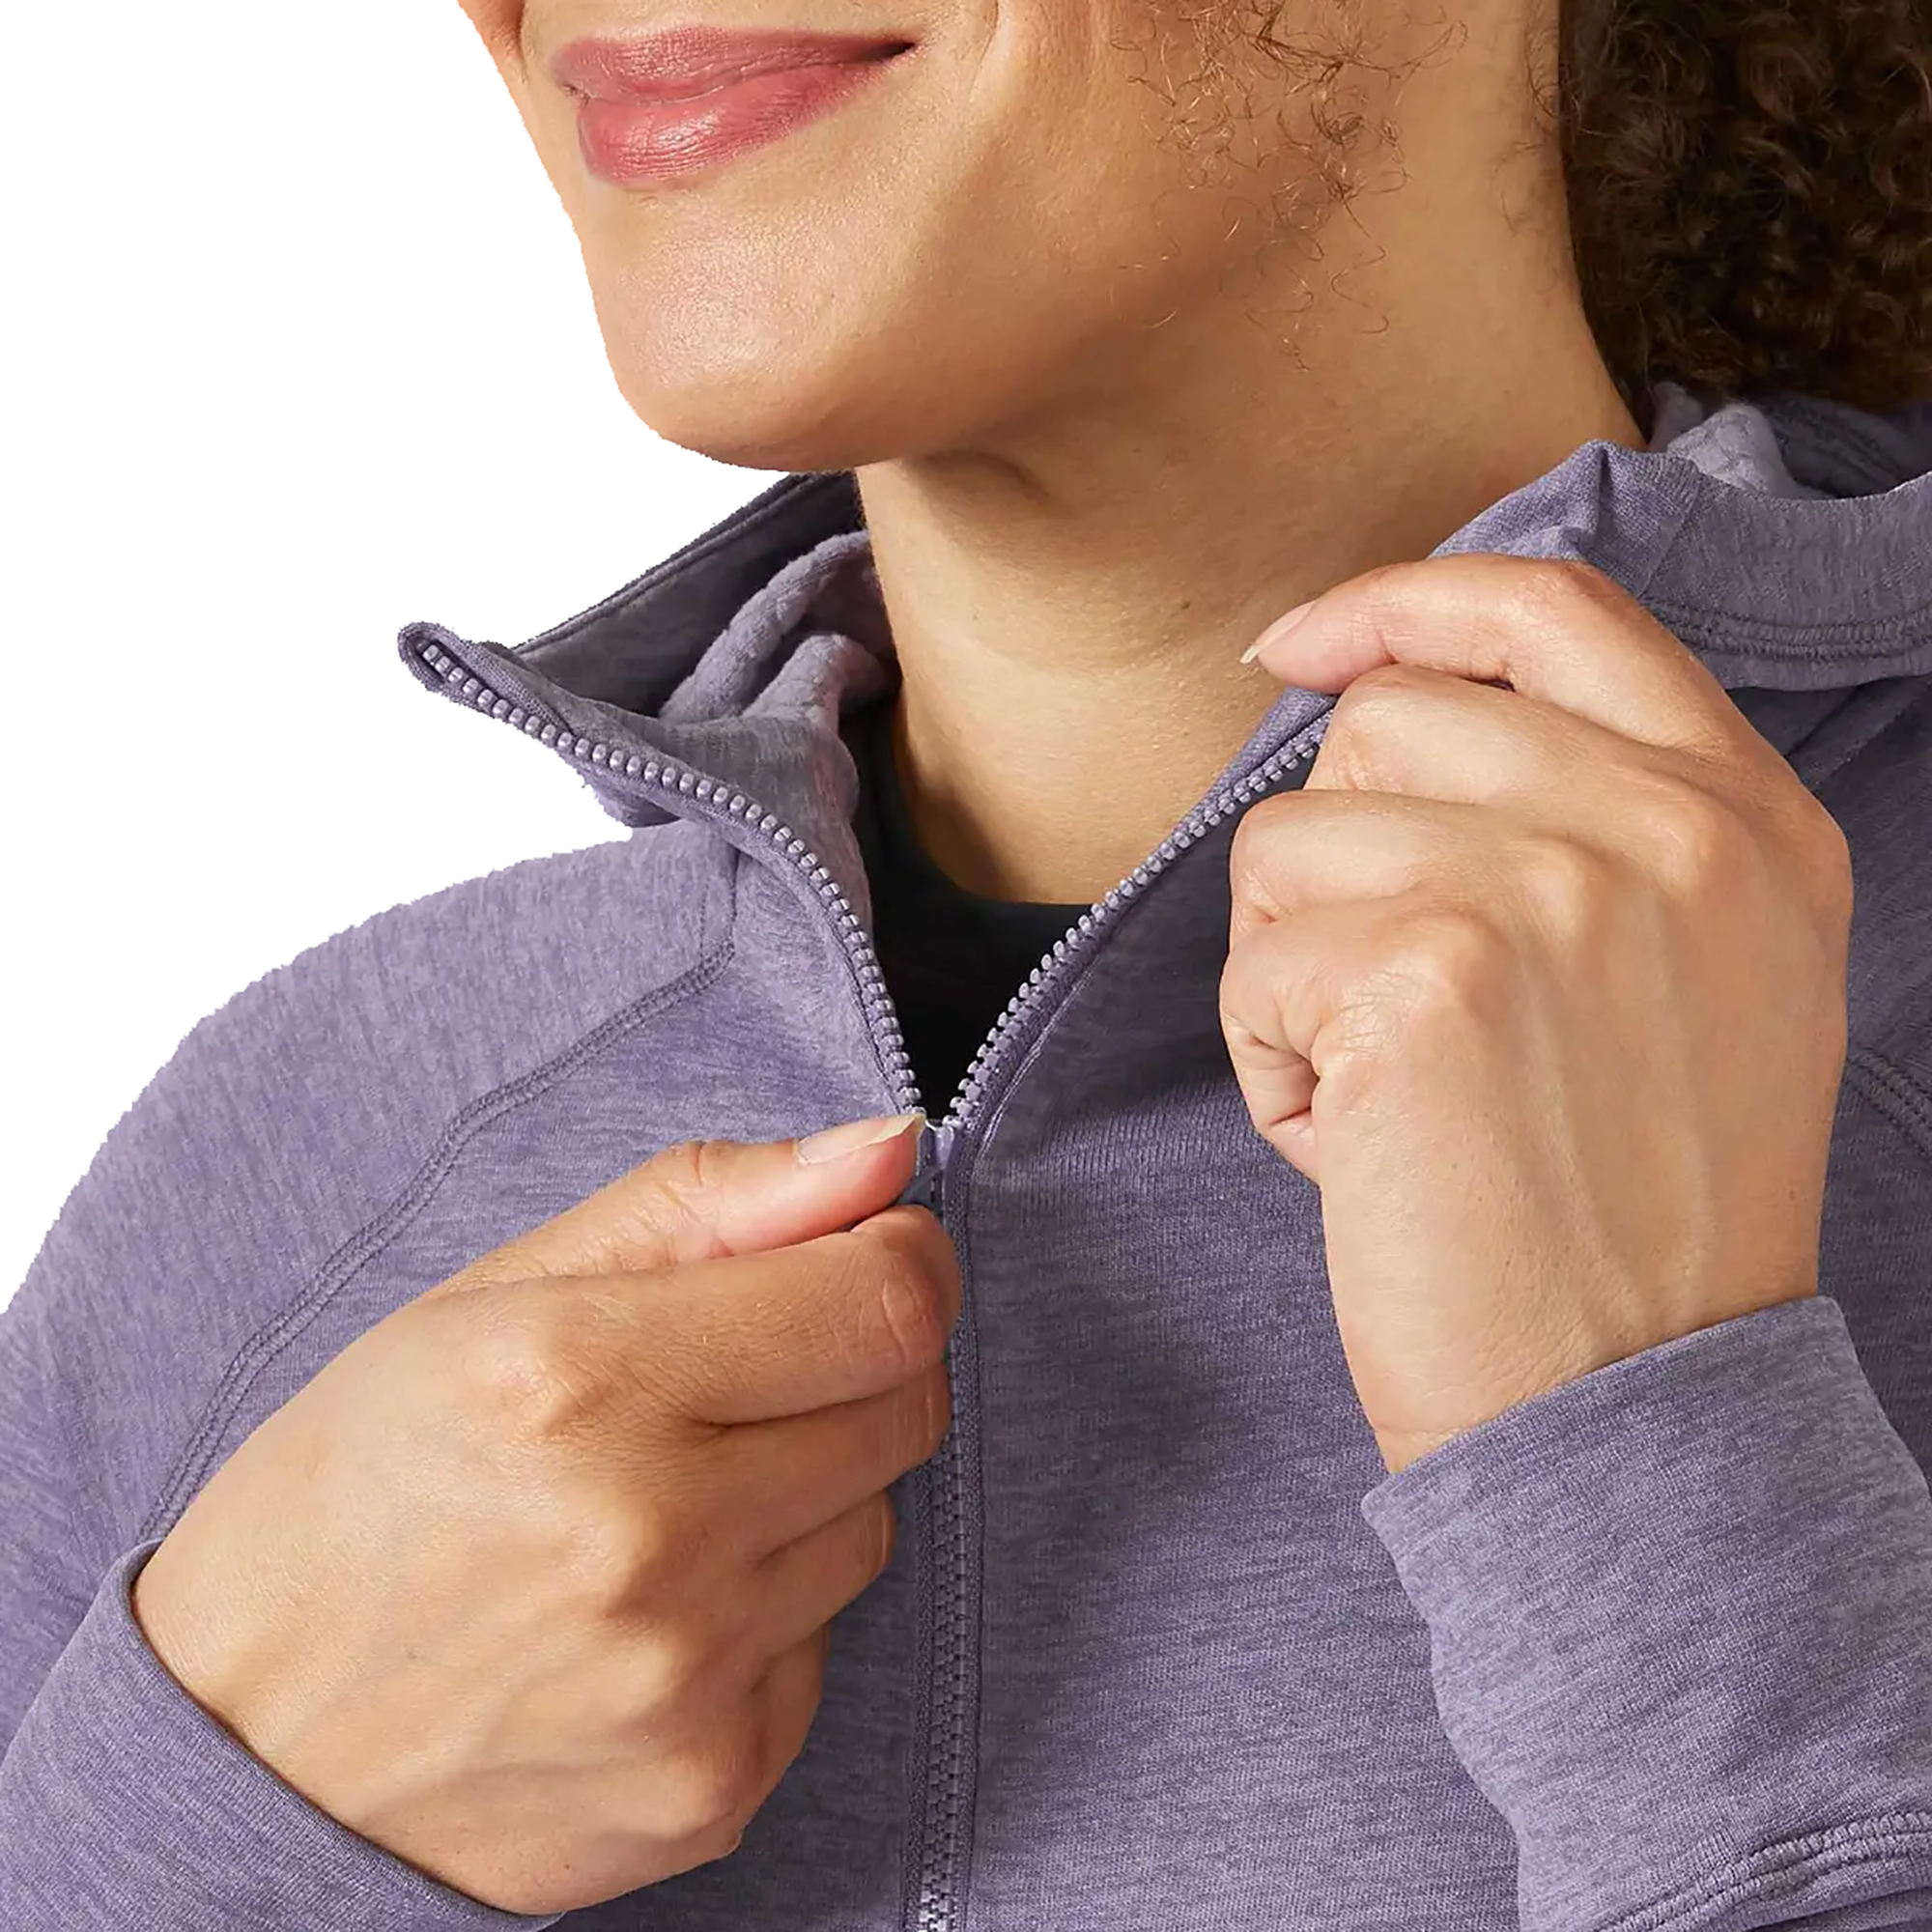 Rab Nexus Hoody Women's Technical Zipped Fleece